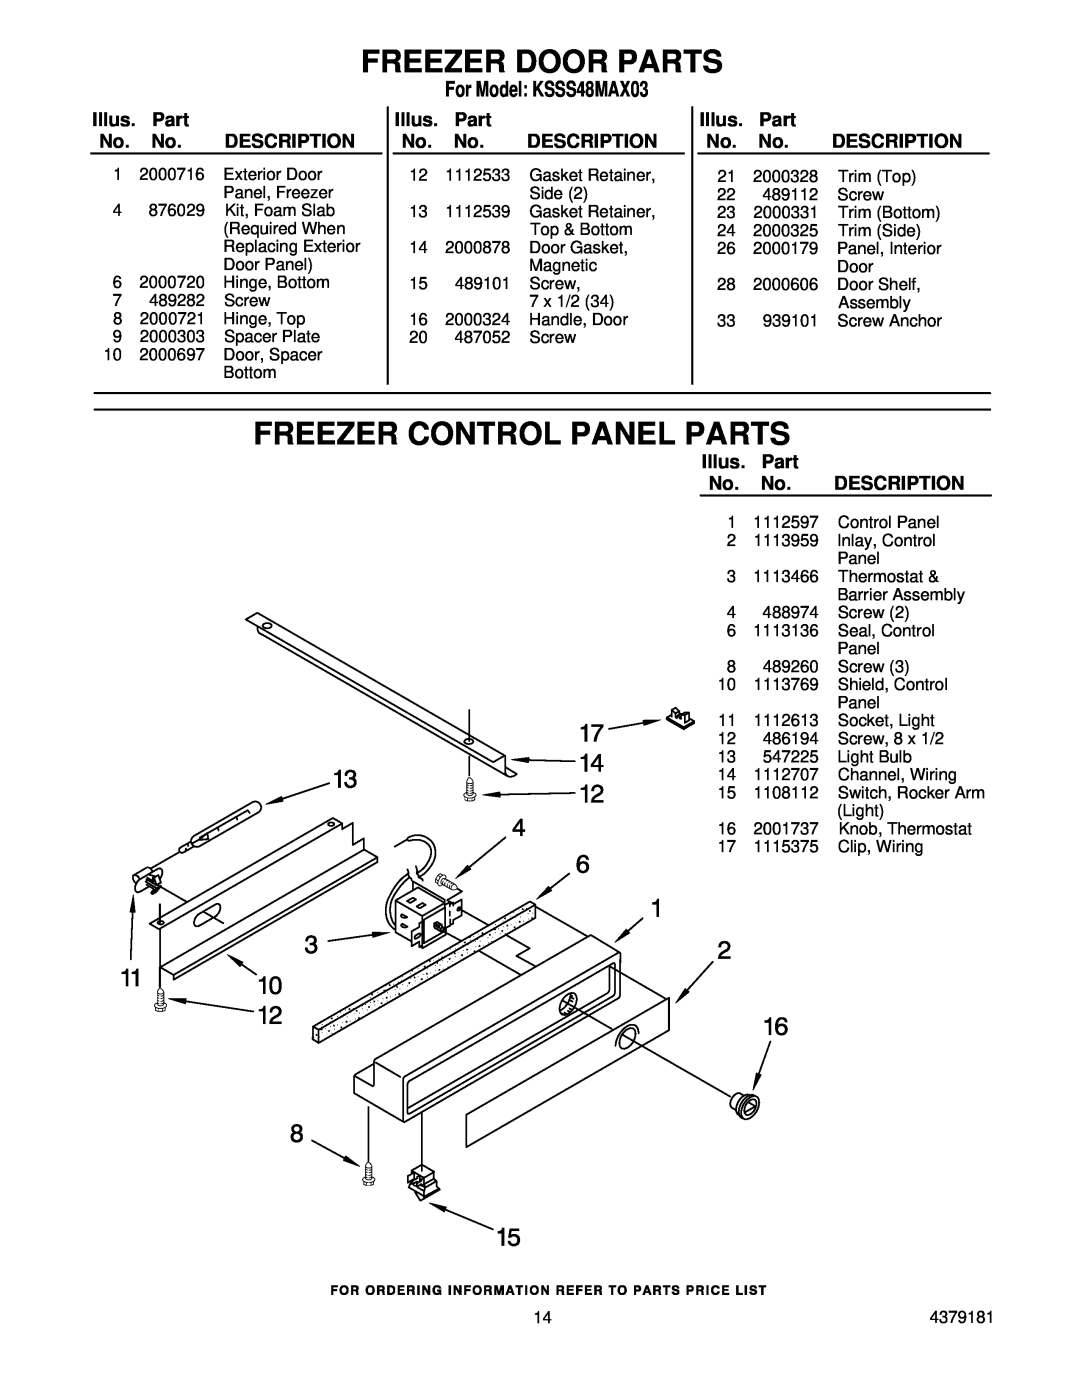 KitchenAid Freezer Control Panel Parts, Freezer Door Parts, For Model KSSS48MAX03, Illus. Part No. No. DESCRIPTION 